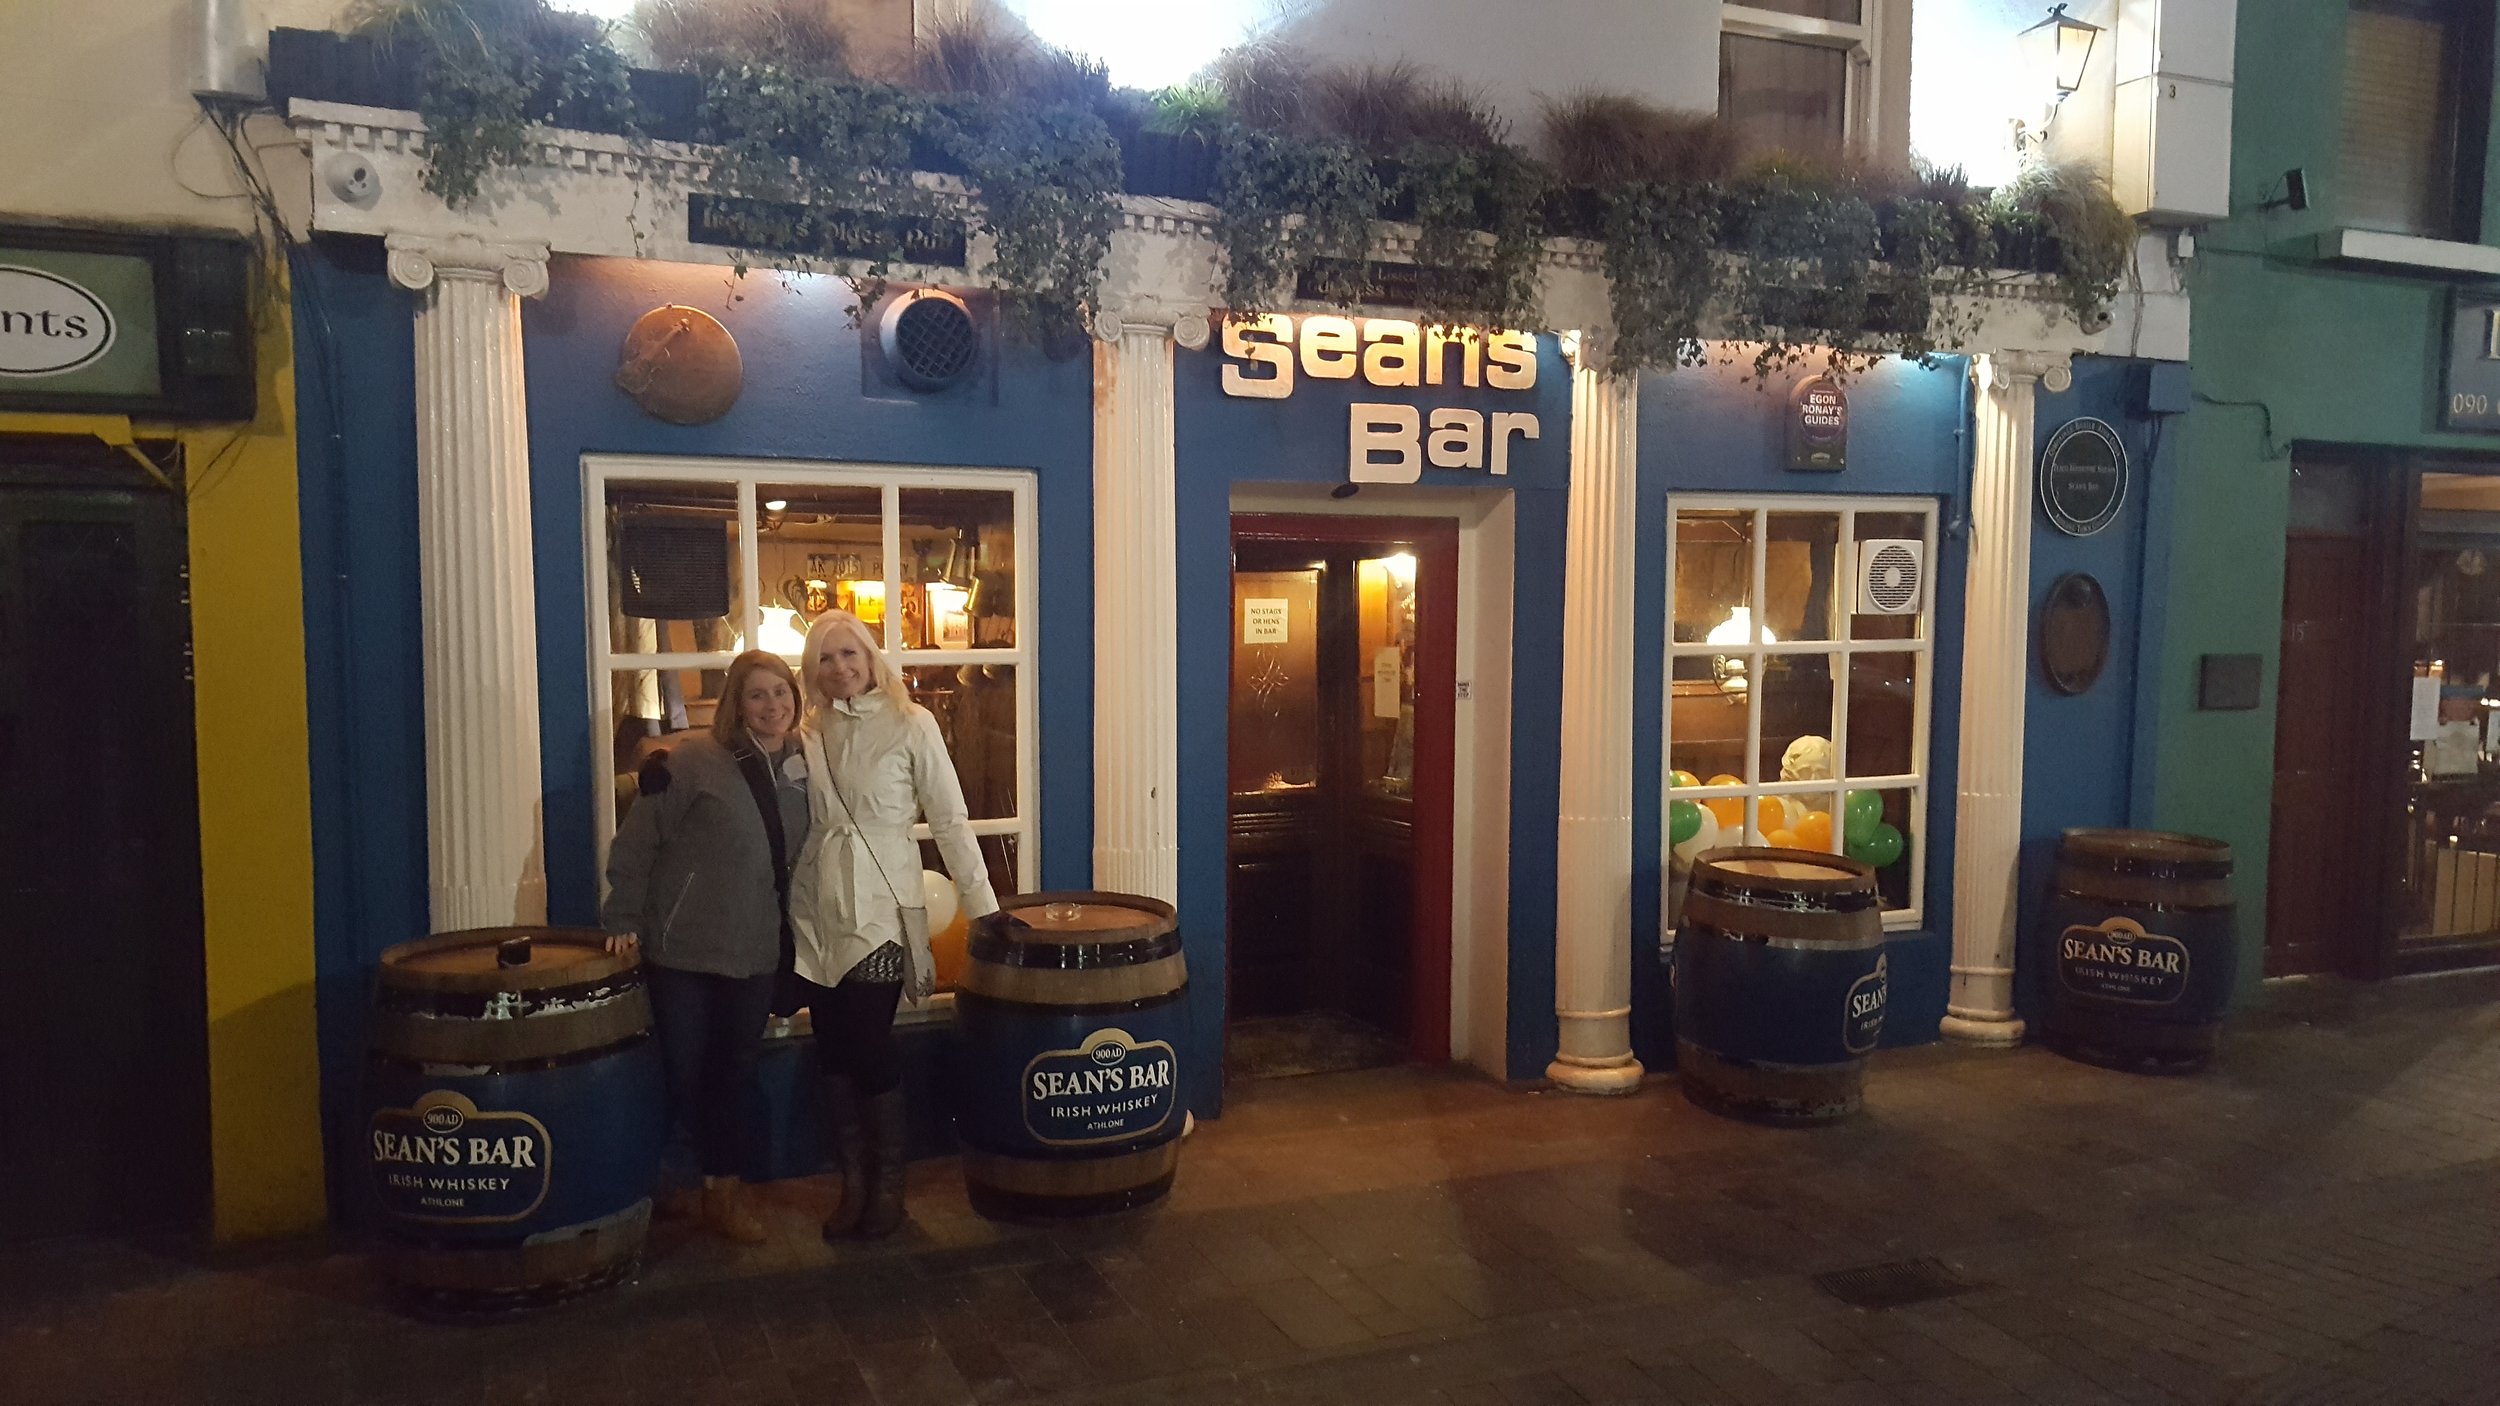 Murphy and me at Sean's Bar, Athlone